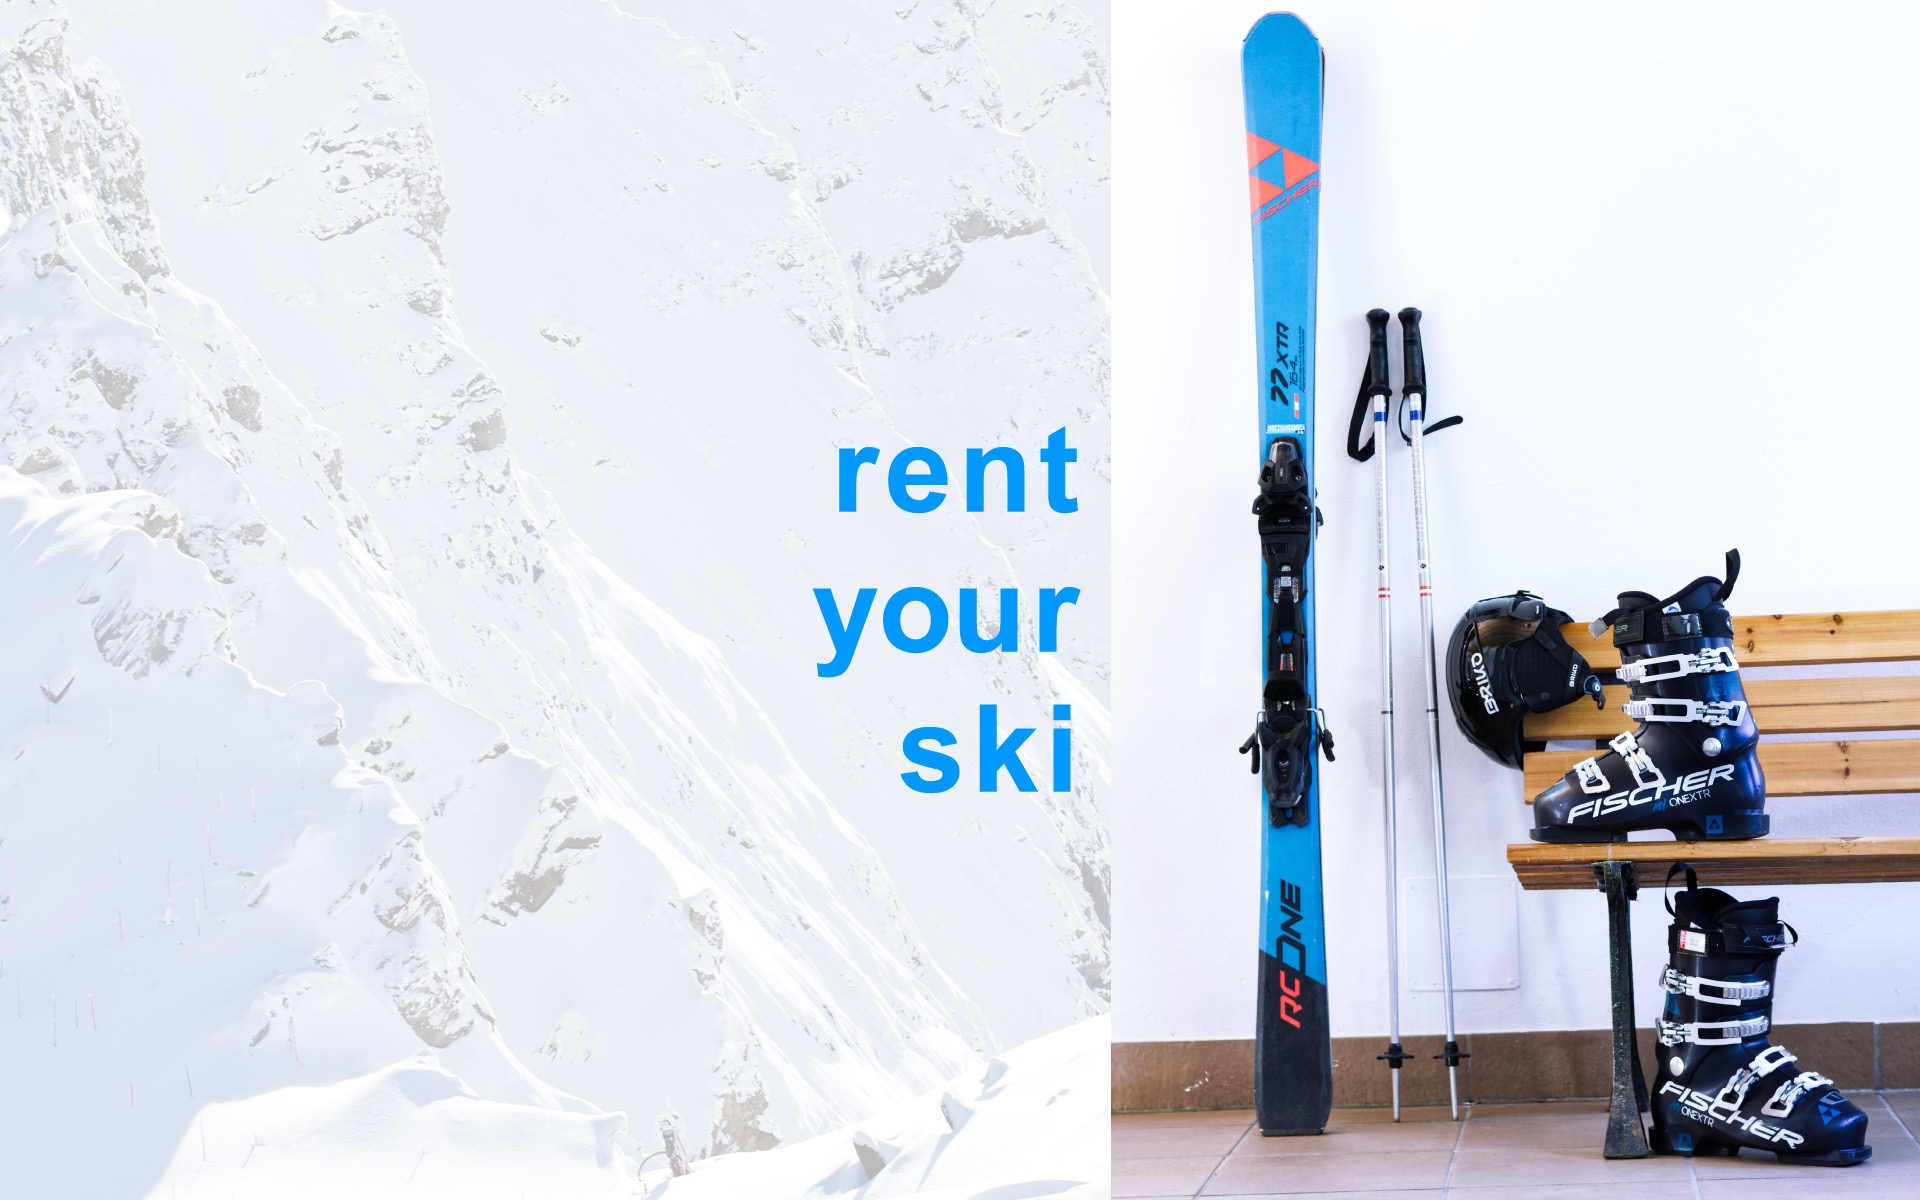 ski-rental-for-adultsbr--amp-youths